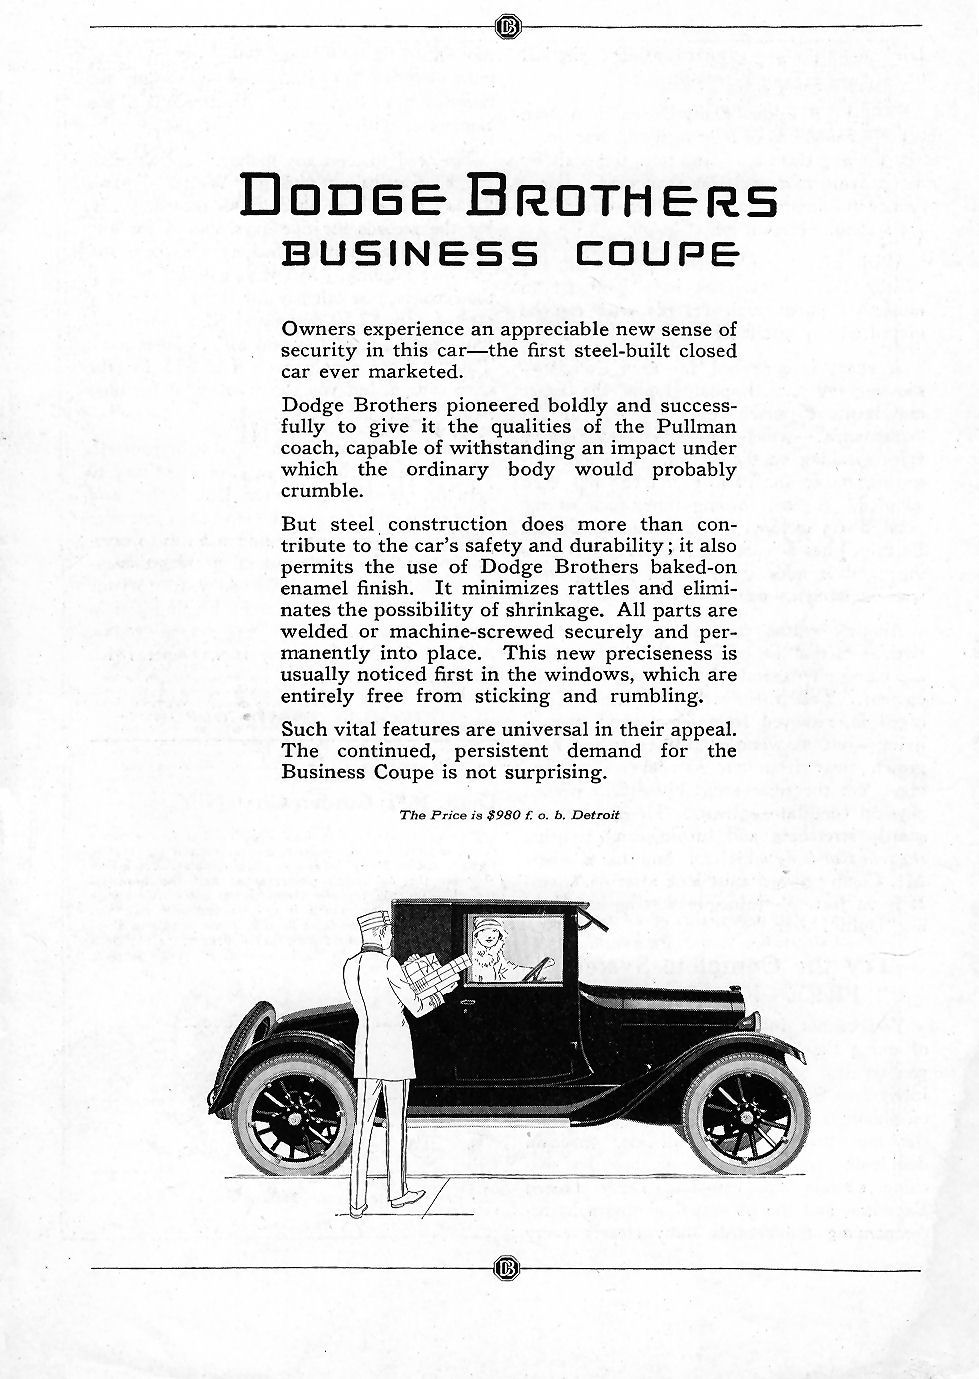 1922 Dodge Auto Advertising